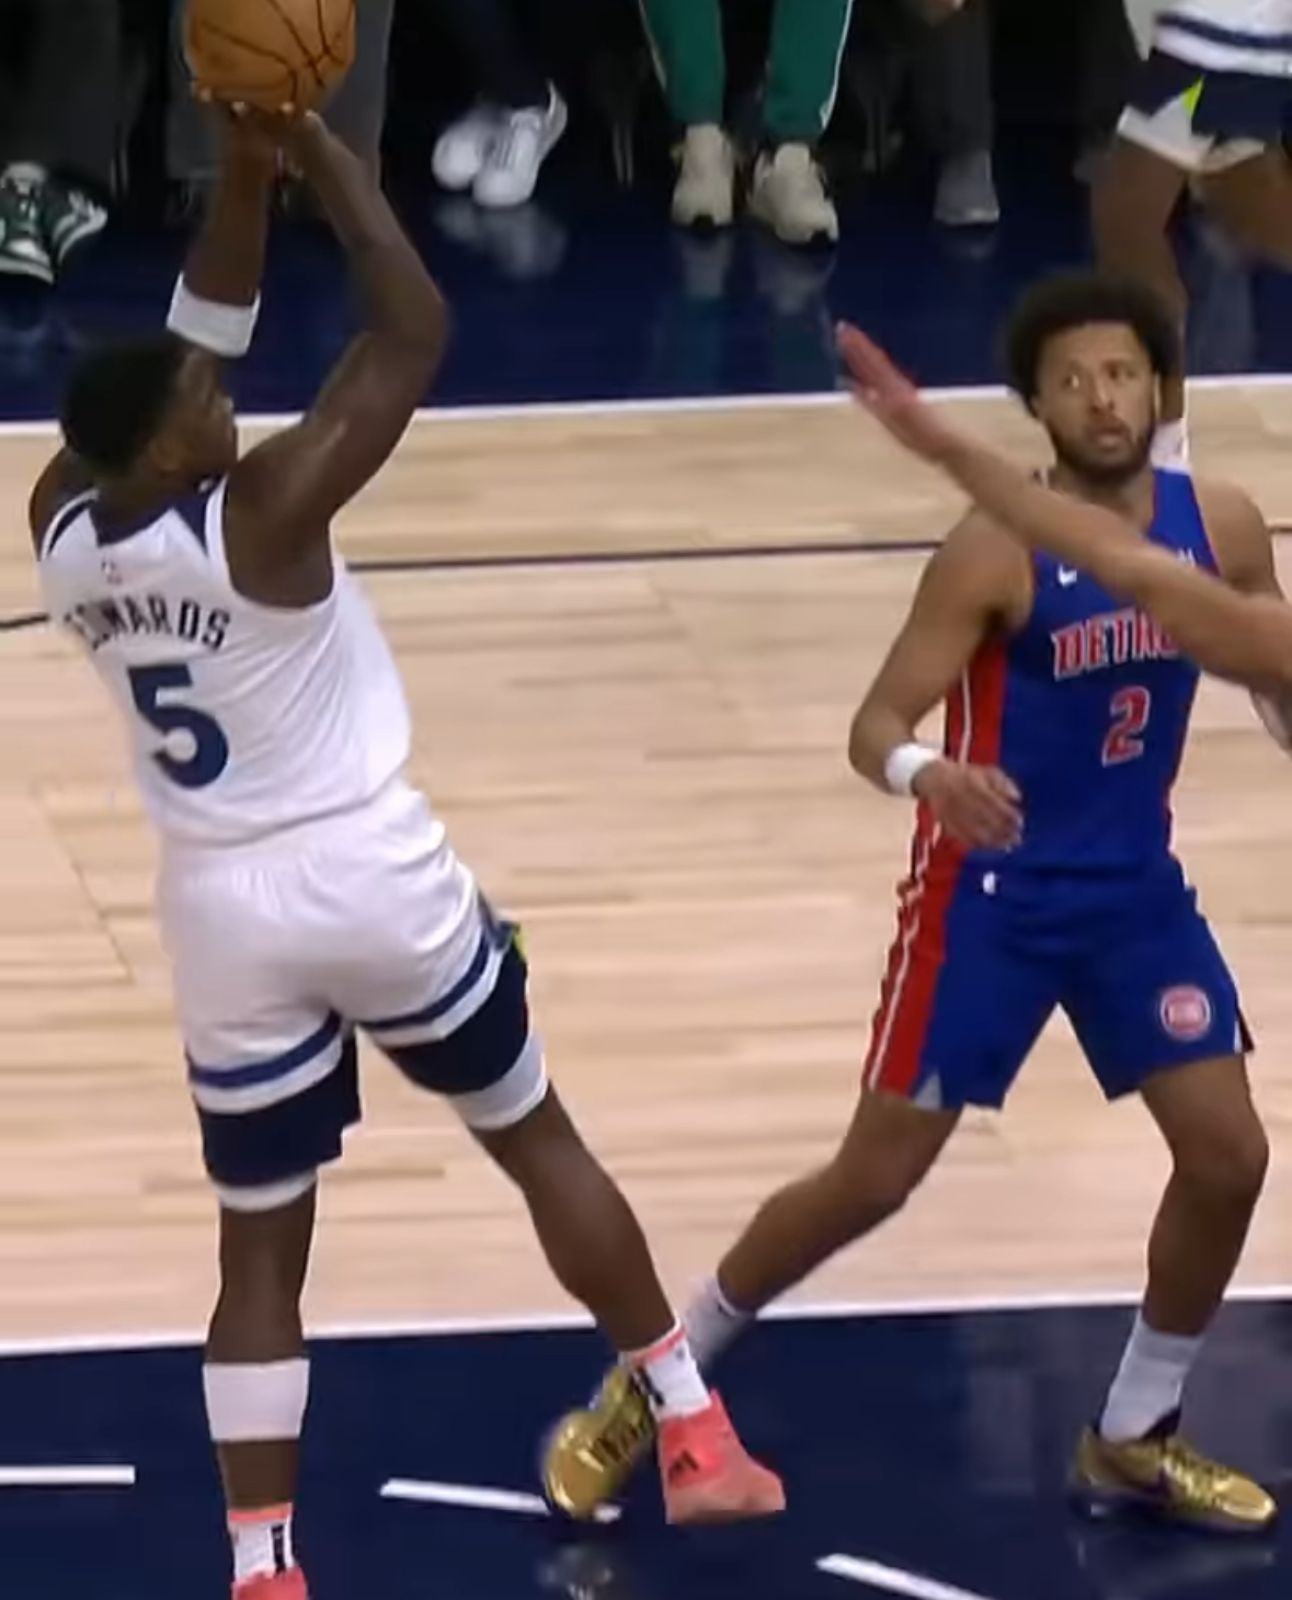 【影片】NBA / Edwards連踩六步夢幻步 轉身後仰跳投吃掉對手